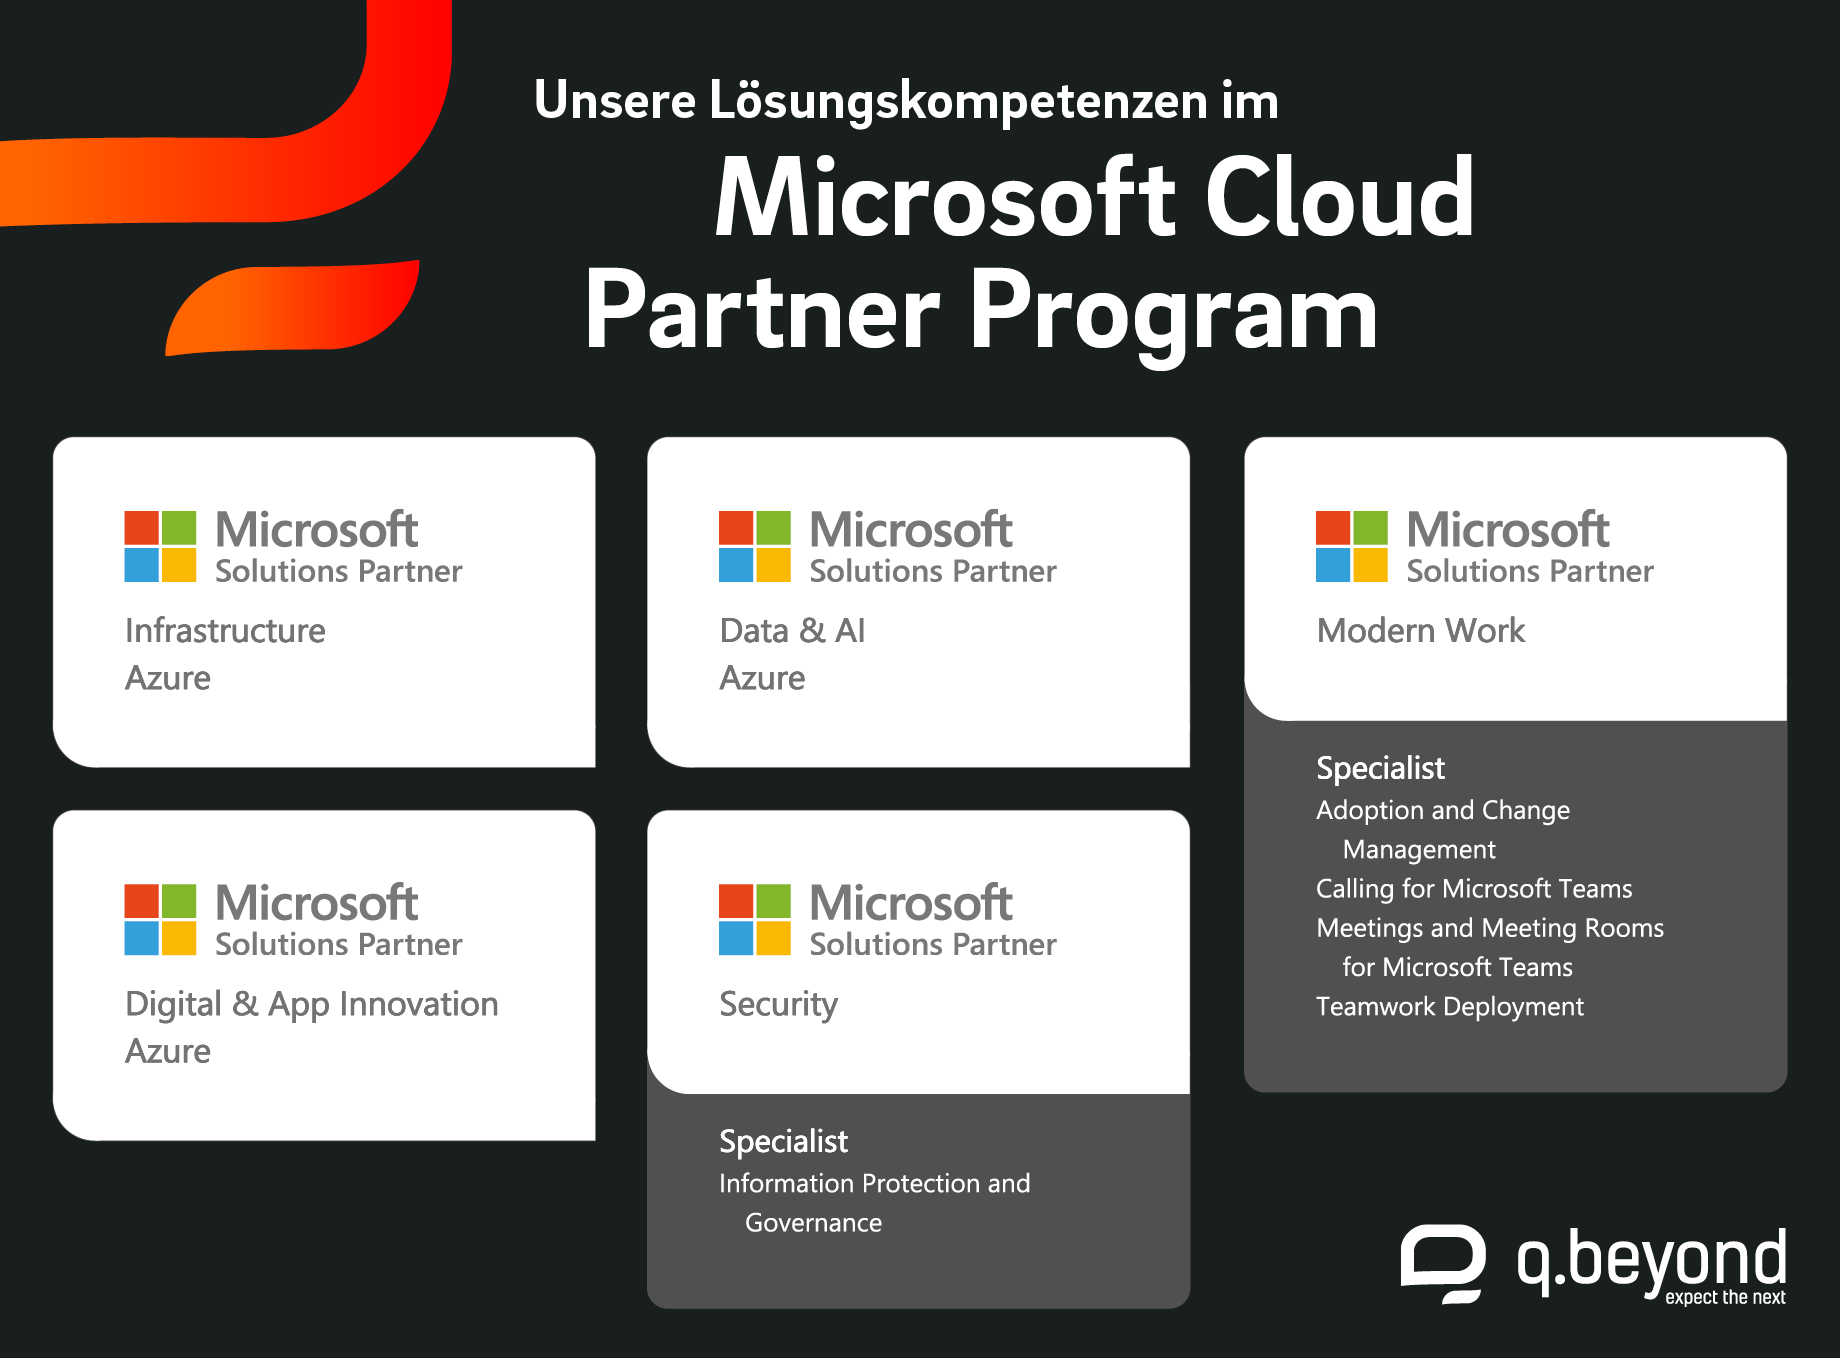 Bild: q.beyond Lösungskompetenzen im Microsoft Cloud Partner Program